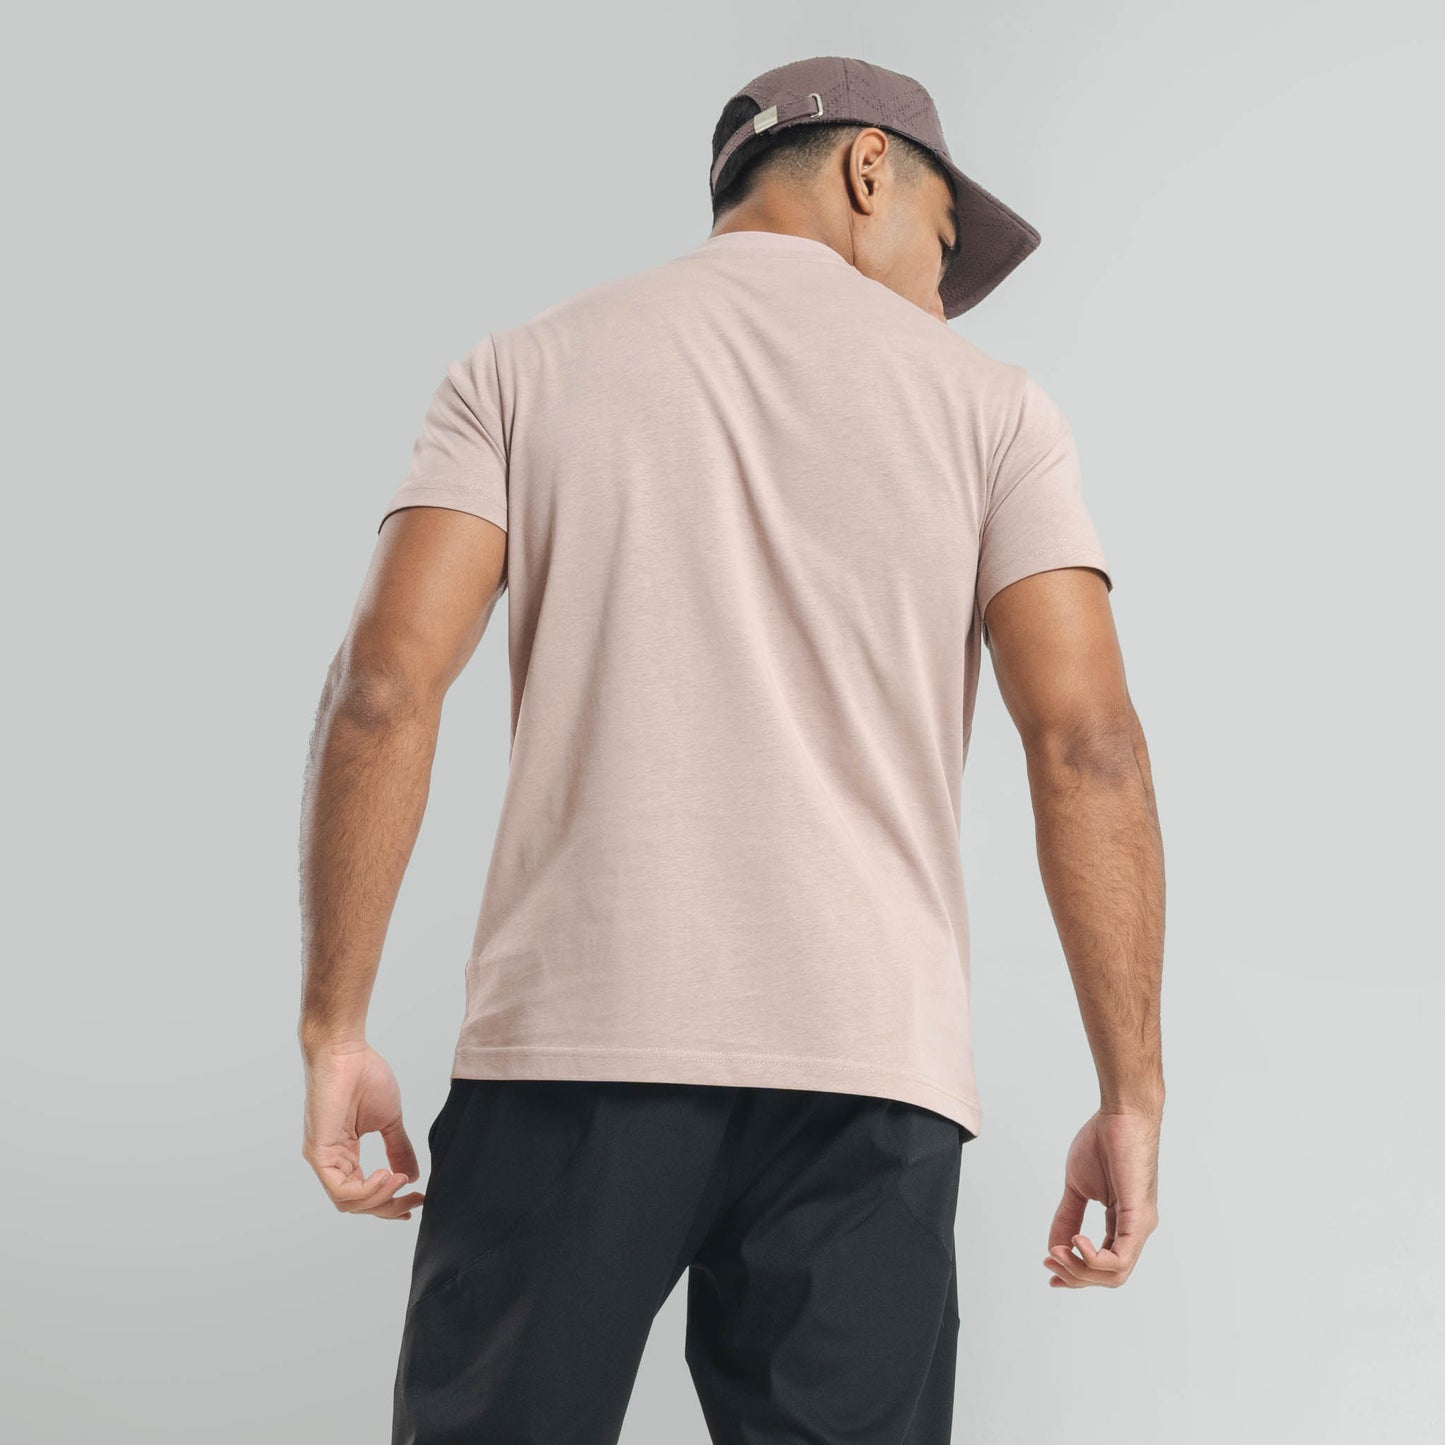 Plain Puce Purple crew neck essential t-shirt